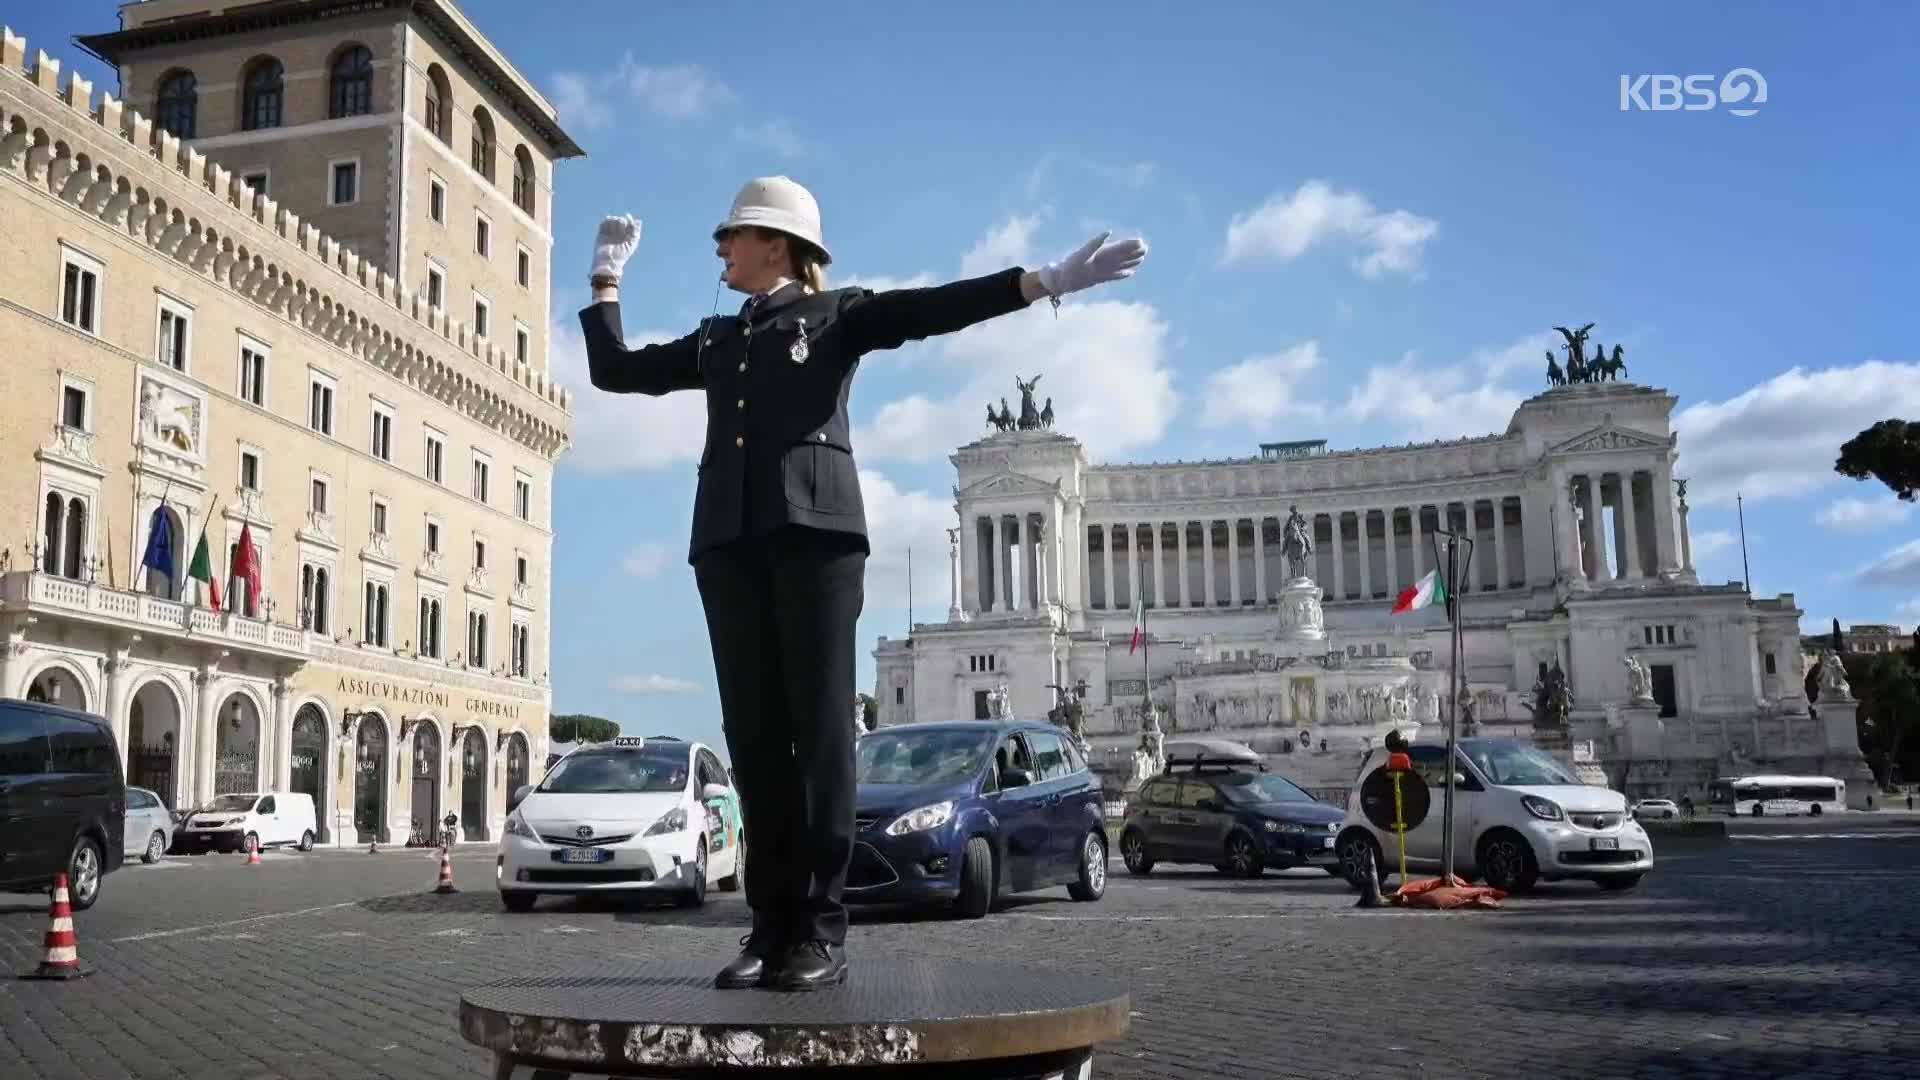 [지구촌 포토] 이탈리아 로마 교차로에 등장한 첫 여성 교통경찰